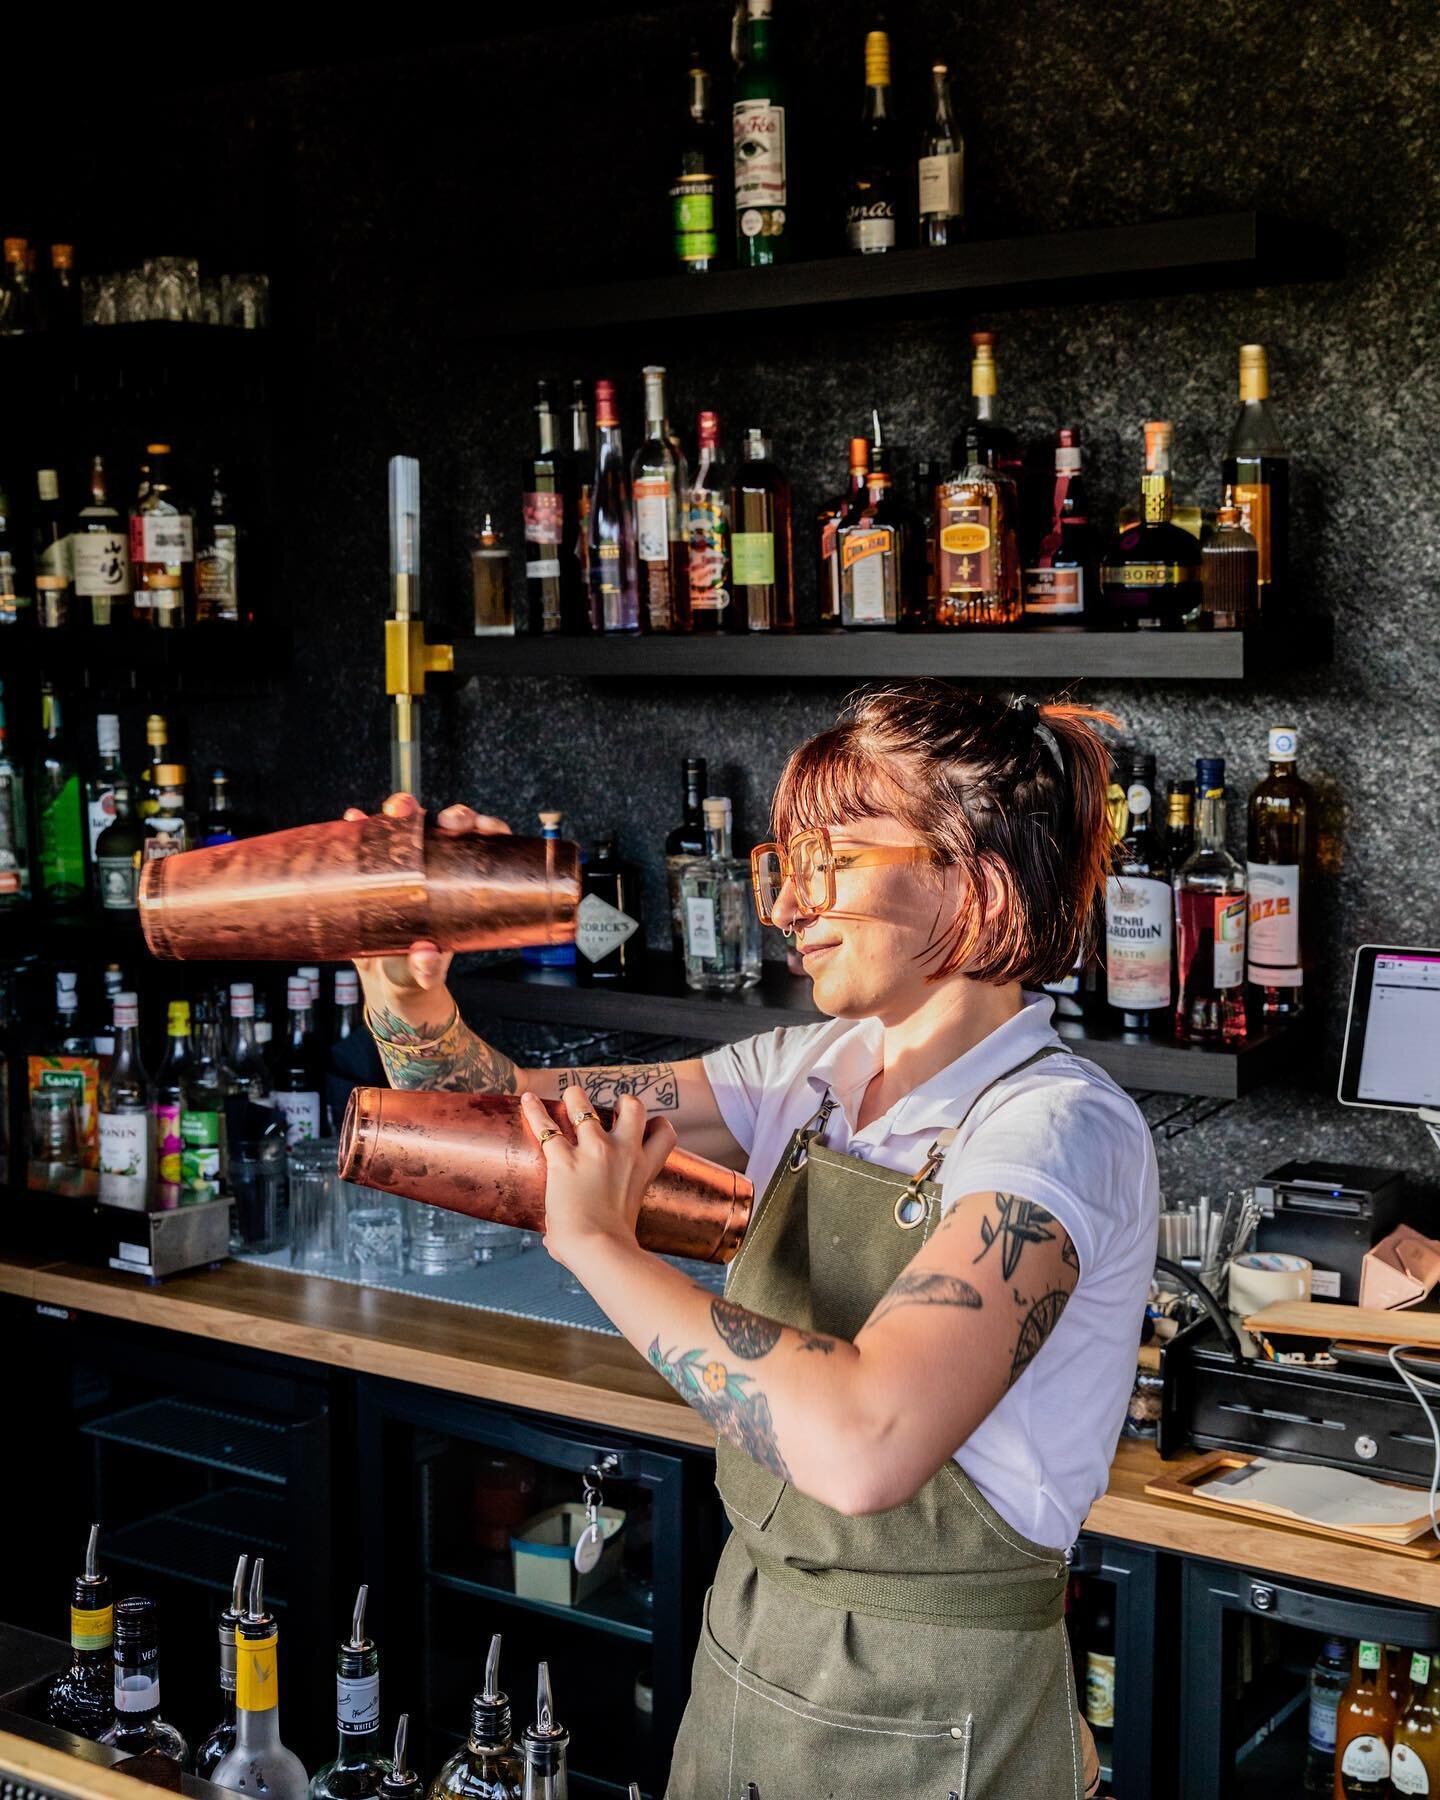 L&rsquo;AMBAR est ouvert🍸
Profitez de cocktails signatures avec du ros&eacute; local, des recettes &eacute;labor&eacute;es rien que pour vous ! 
Fantine aux shakers 💥

📸  @clecuru 

#domainelapierreblanche #pierreblanche #hotel #restaurant #alpill